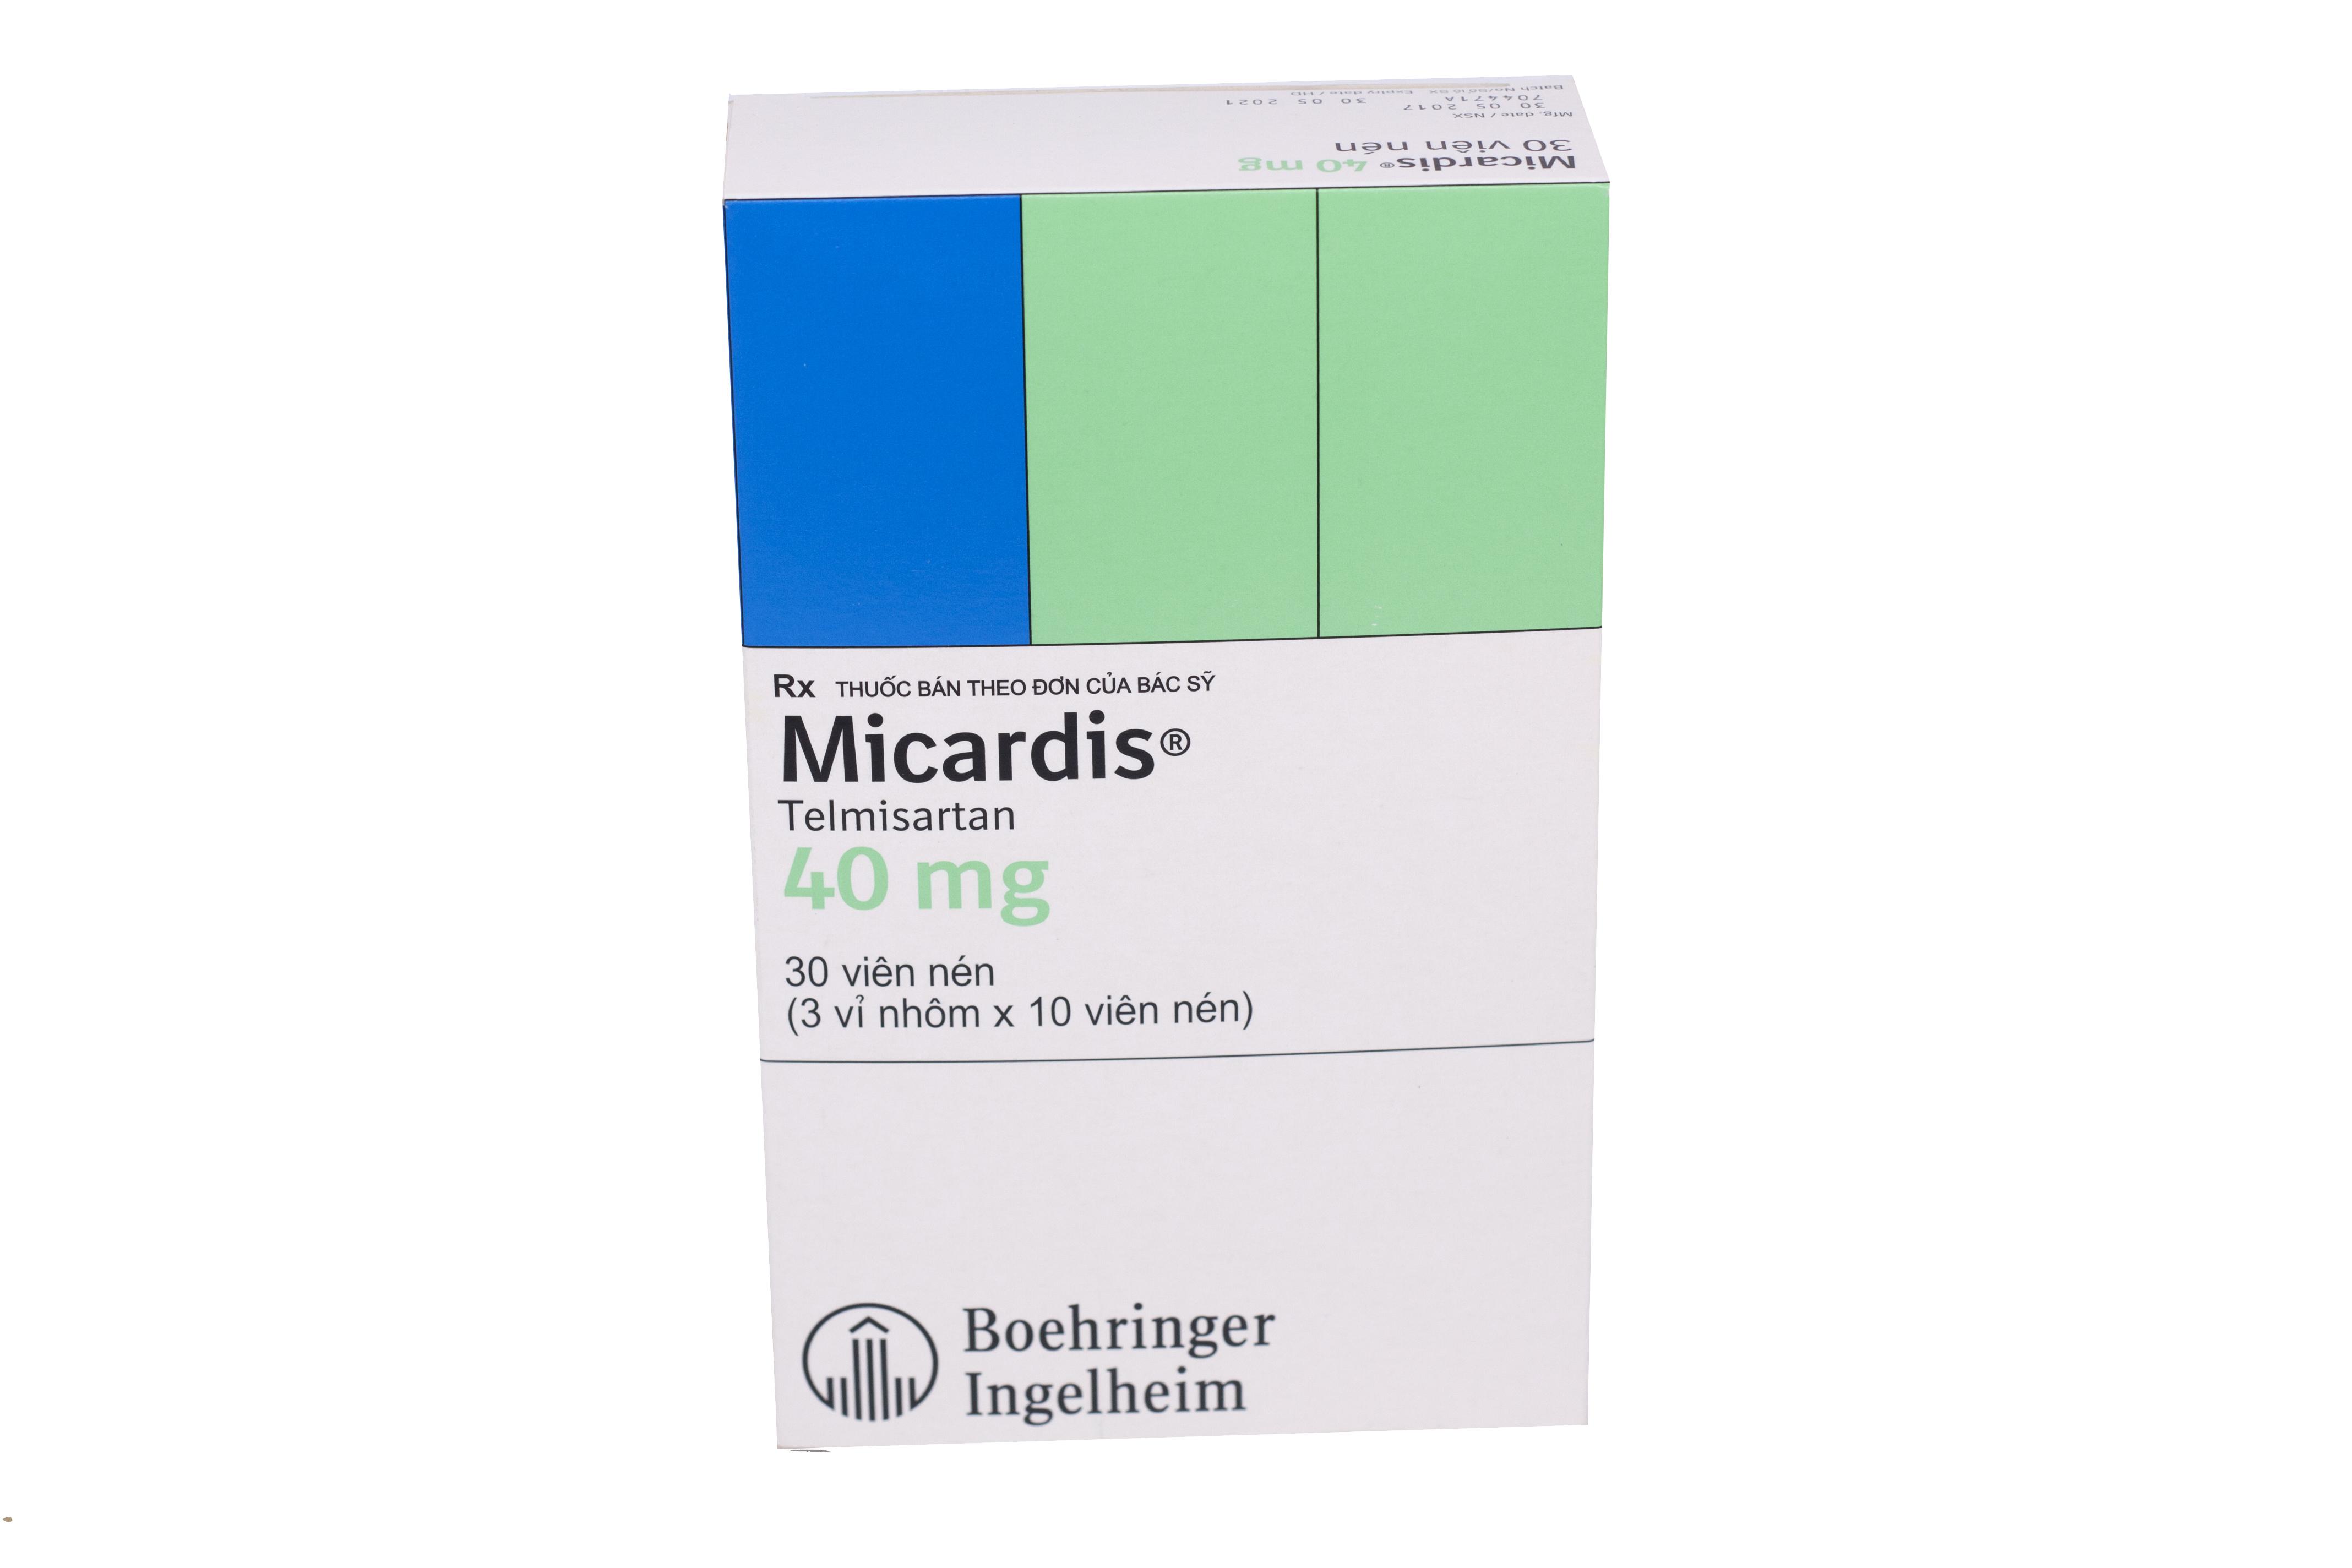 Micardis 40mg (Telmisartan) Boehringer (H/30v) CTY